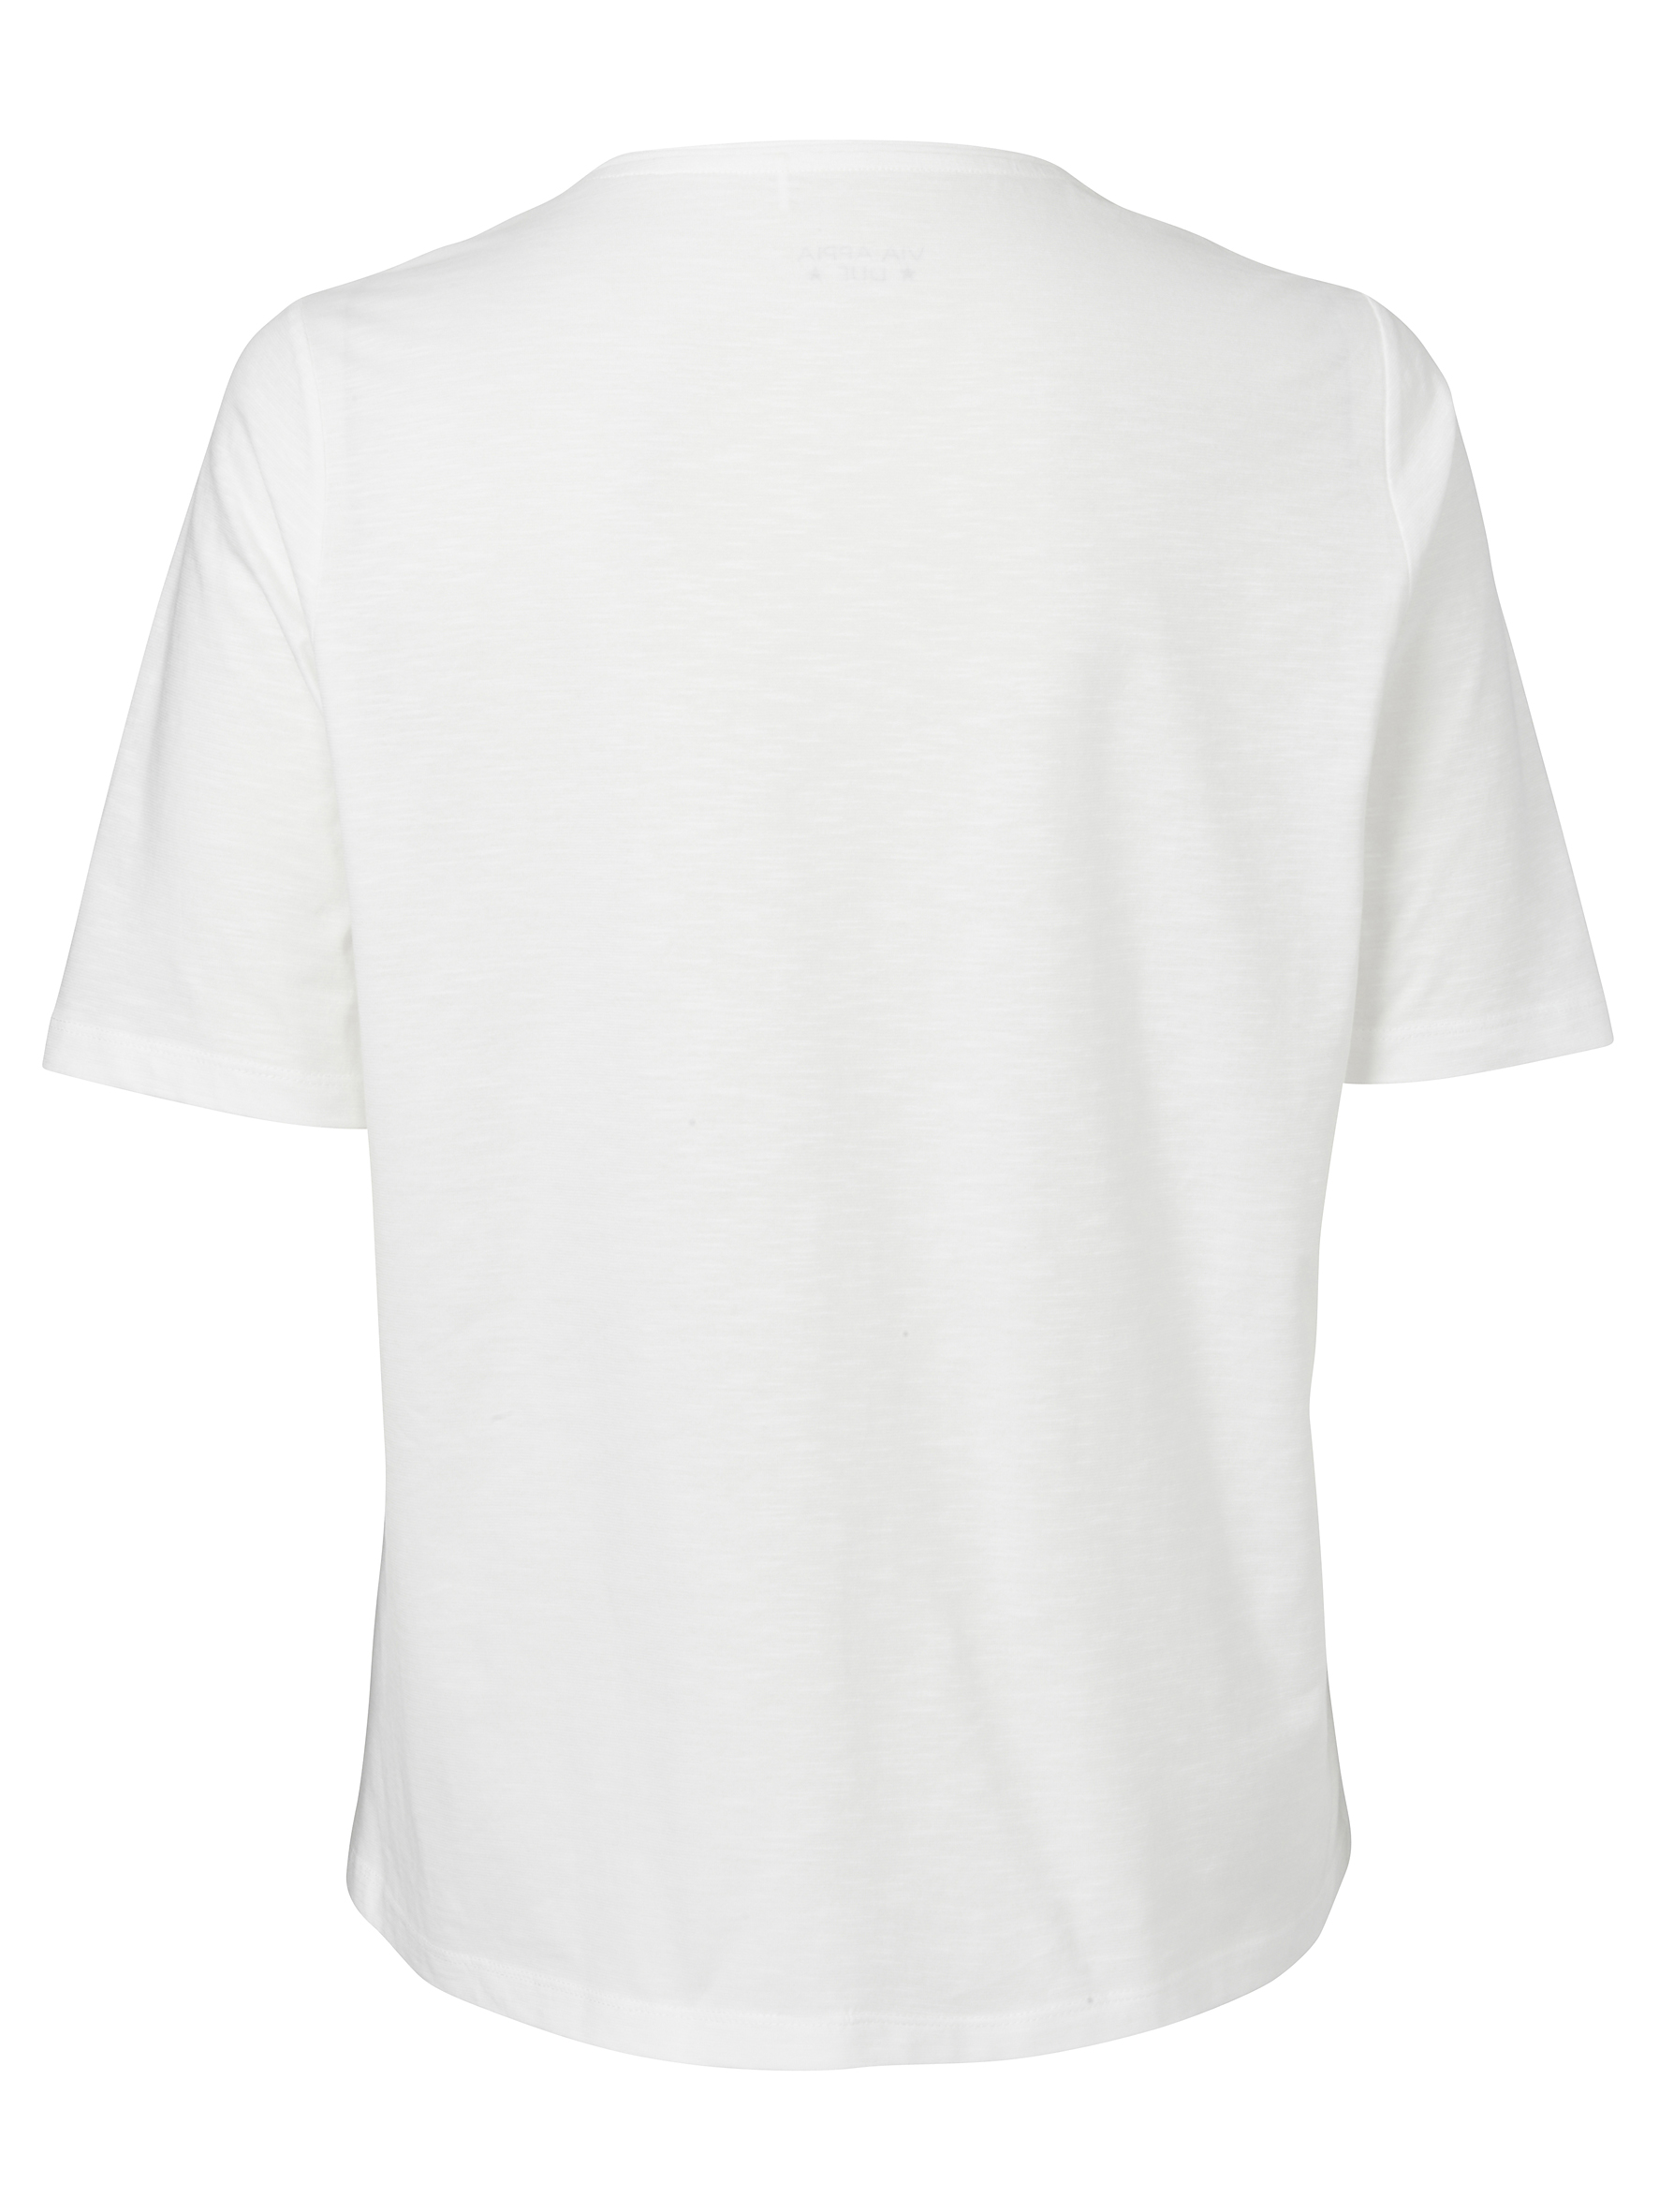 Baumwoll-Shirt mit 1/2 Arm und Statement-Motiv